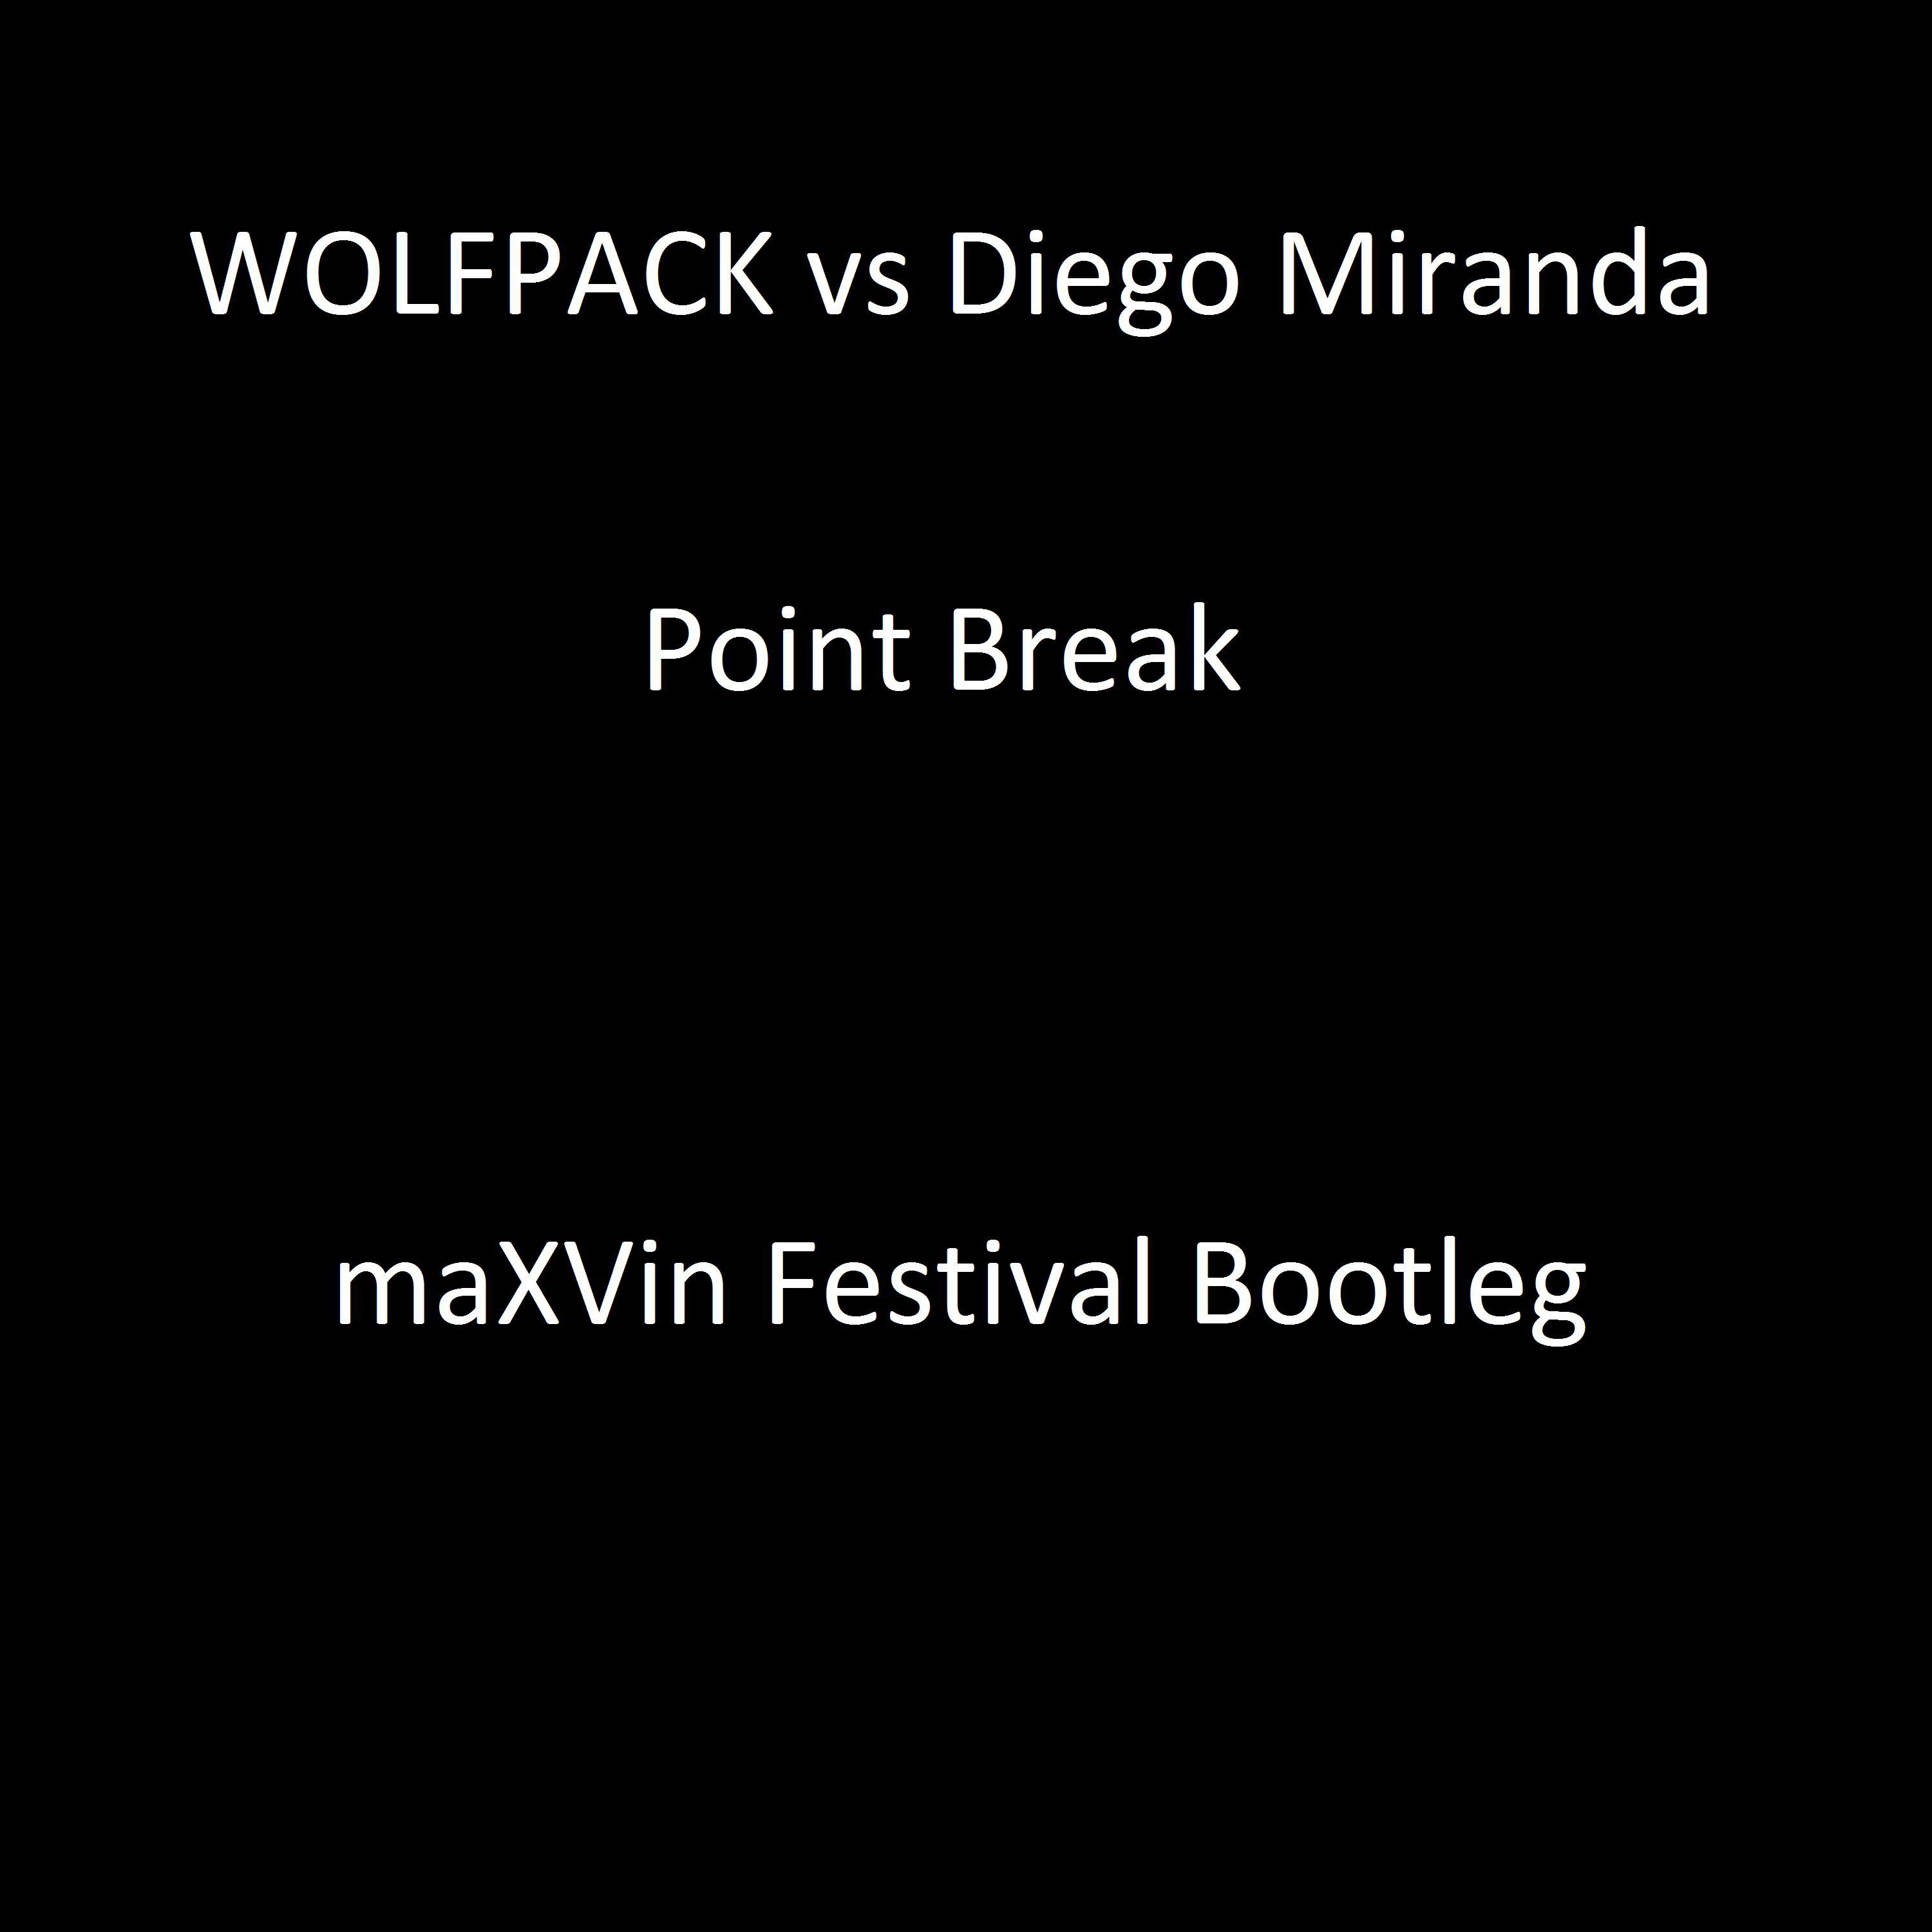 Point Break (maXVin Festival Bootleg)